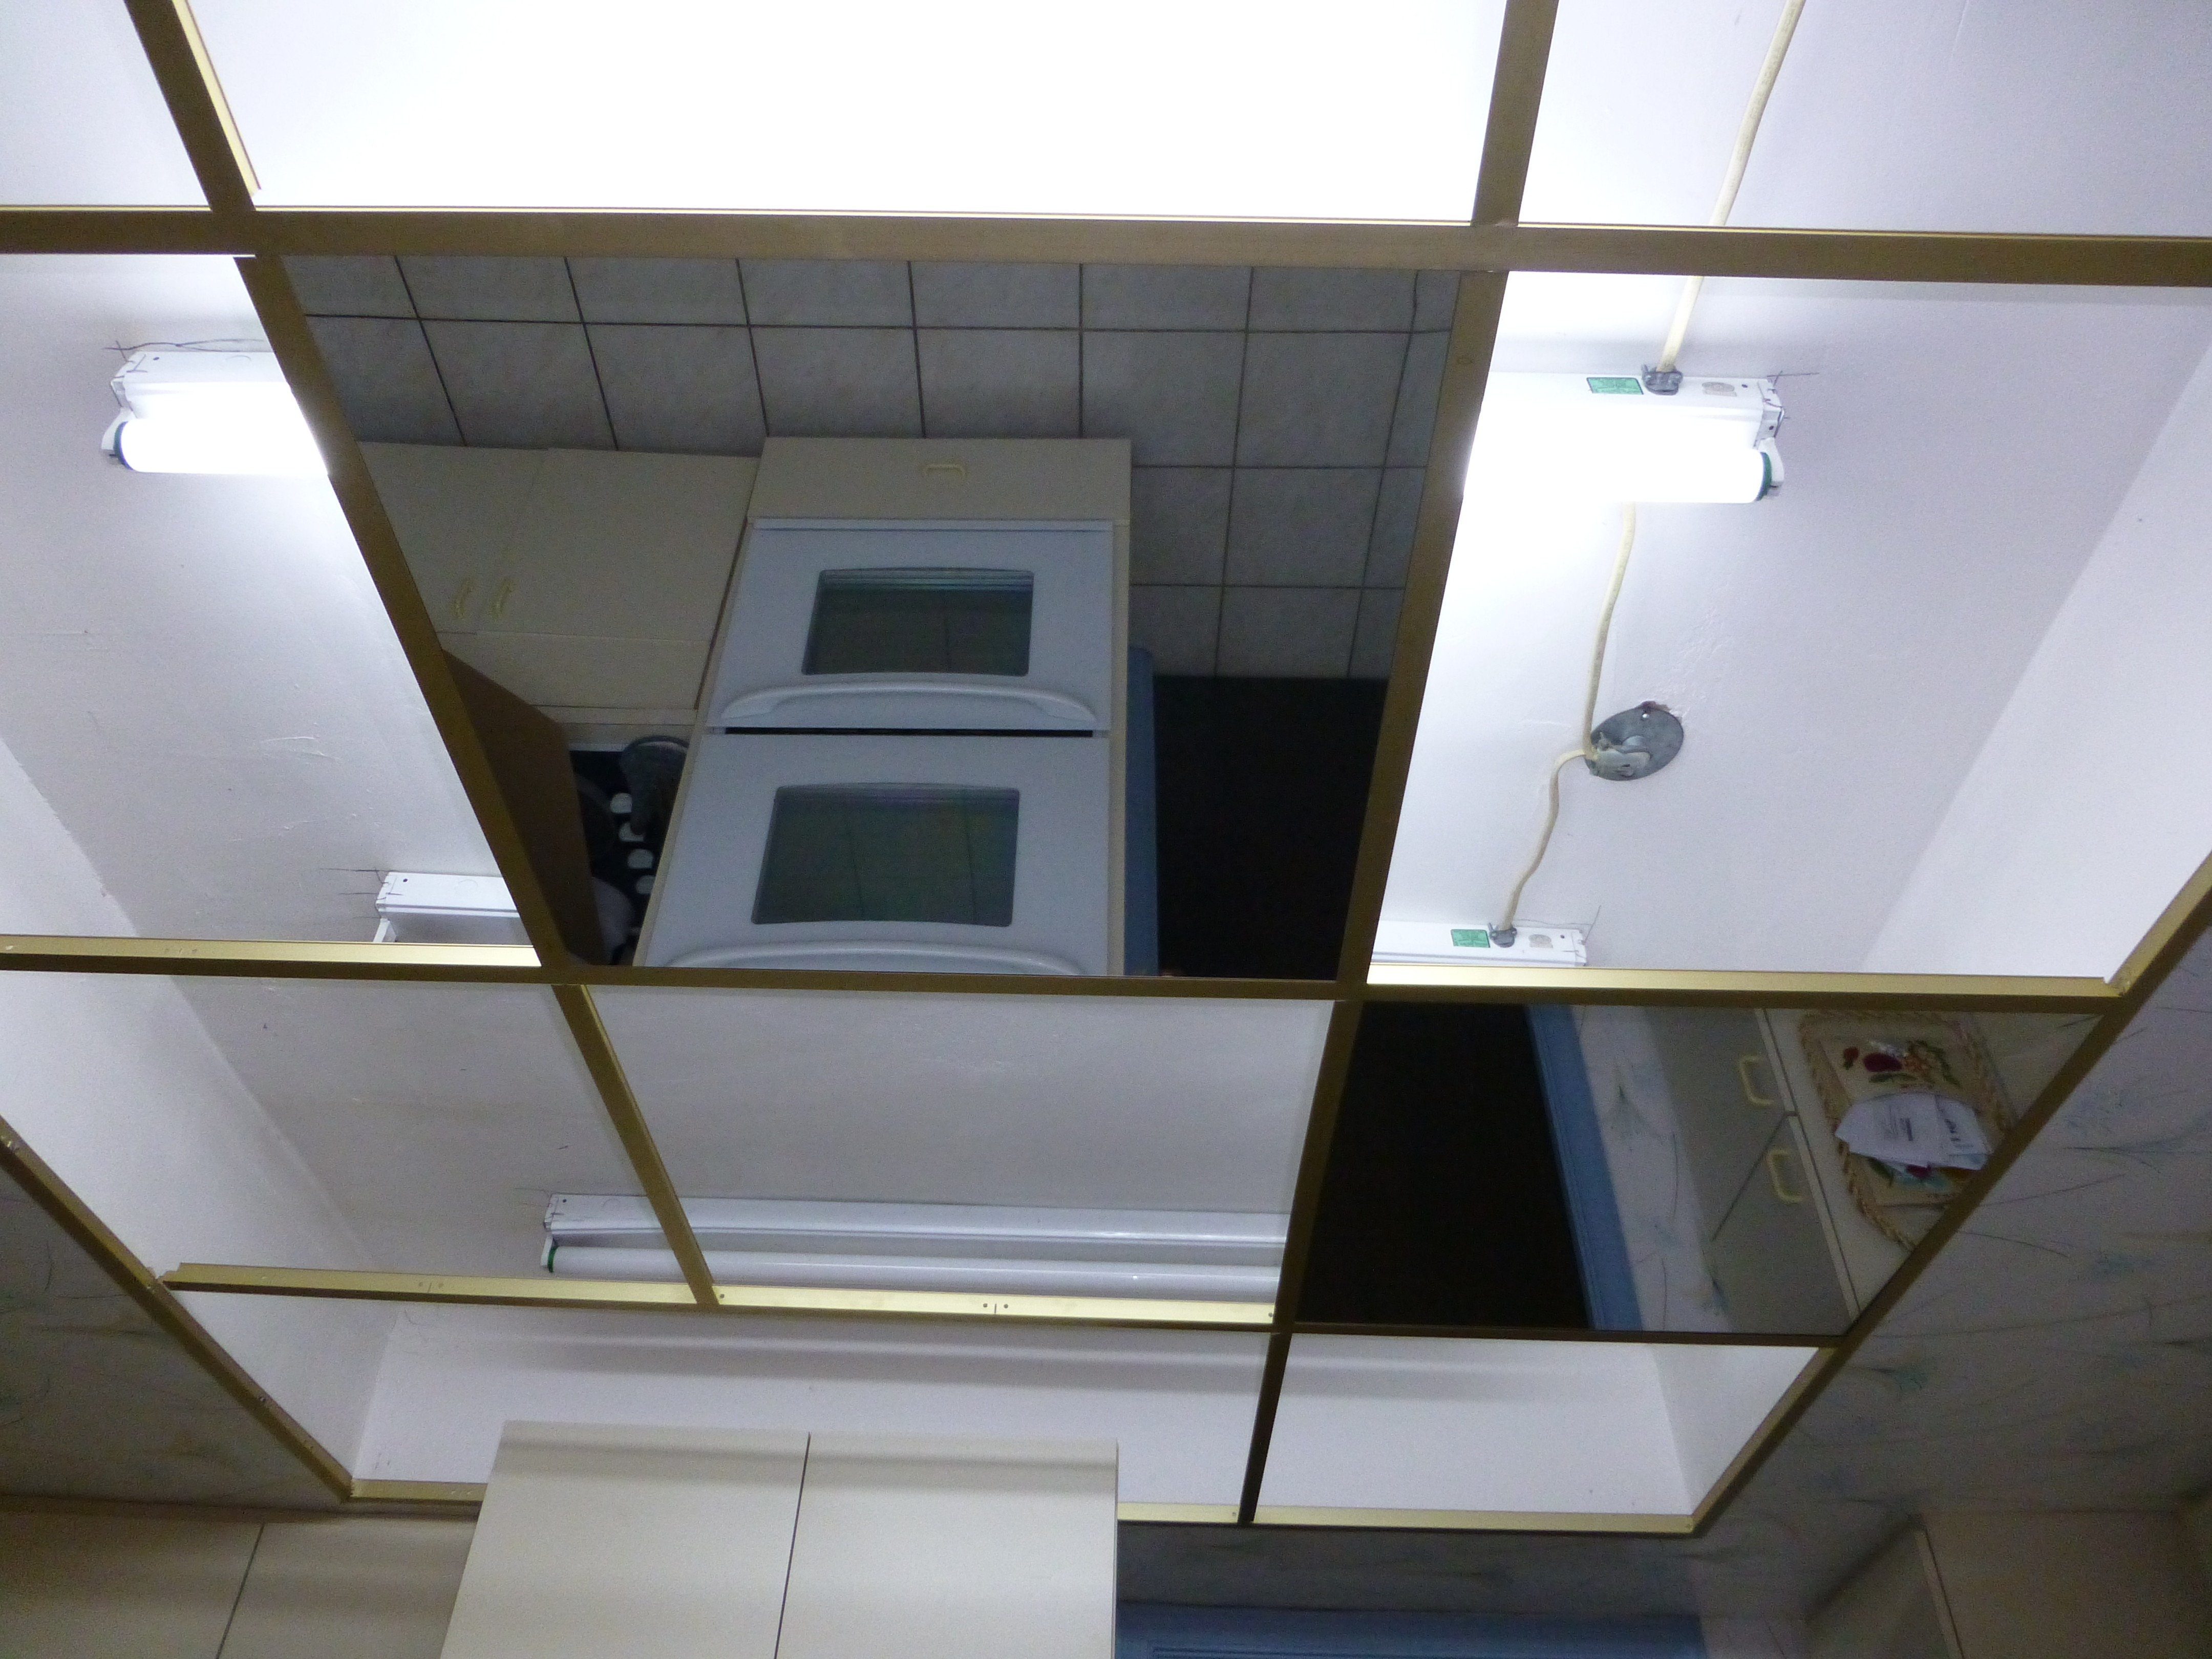 Mirror Drop Ceiling Tiles Mirror Drop Ceiling Tiles mirror drop ceiling tiles ceiling tiles 4320 X 3240